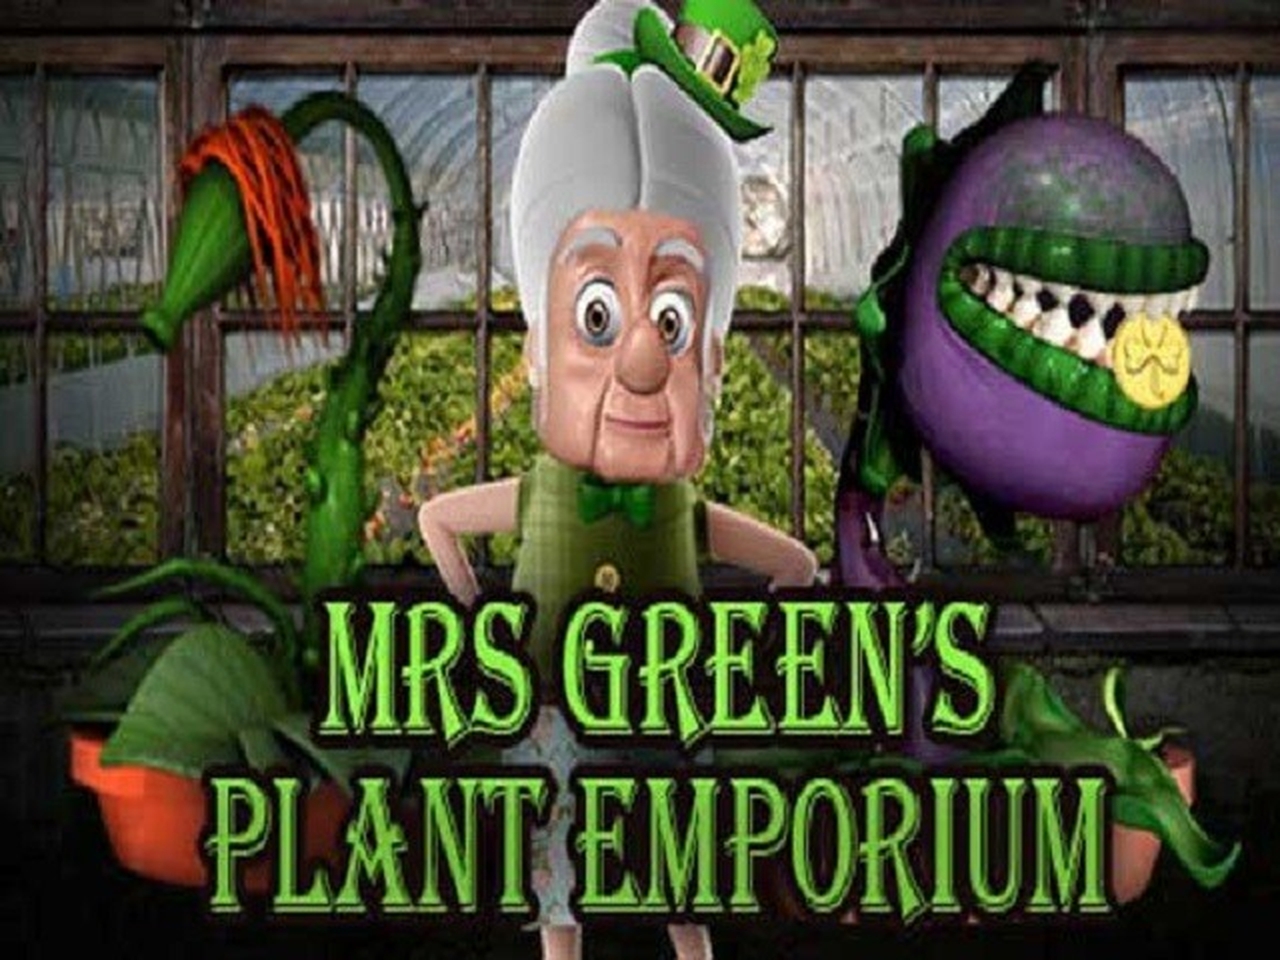 Mrs Green's Plant Emporium demo